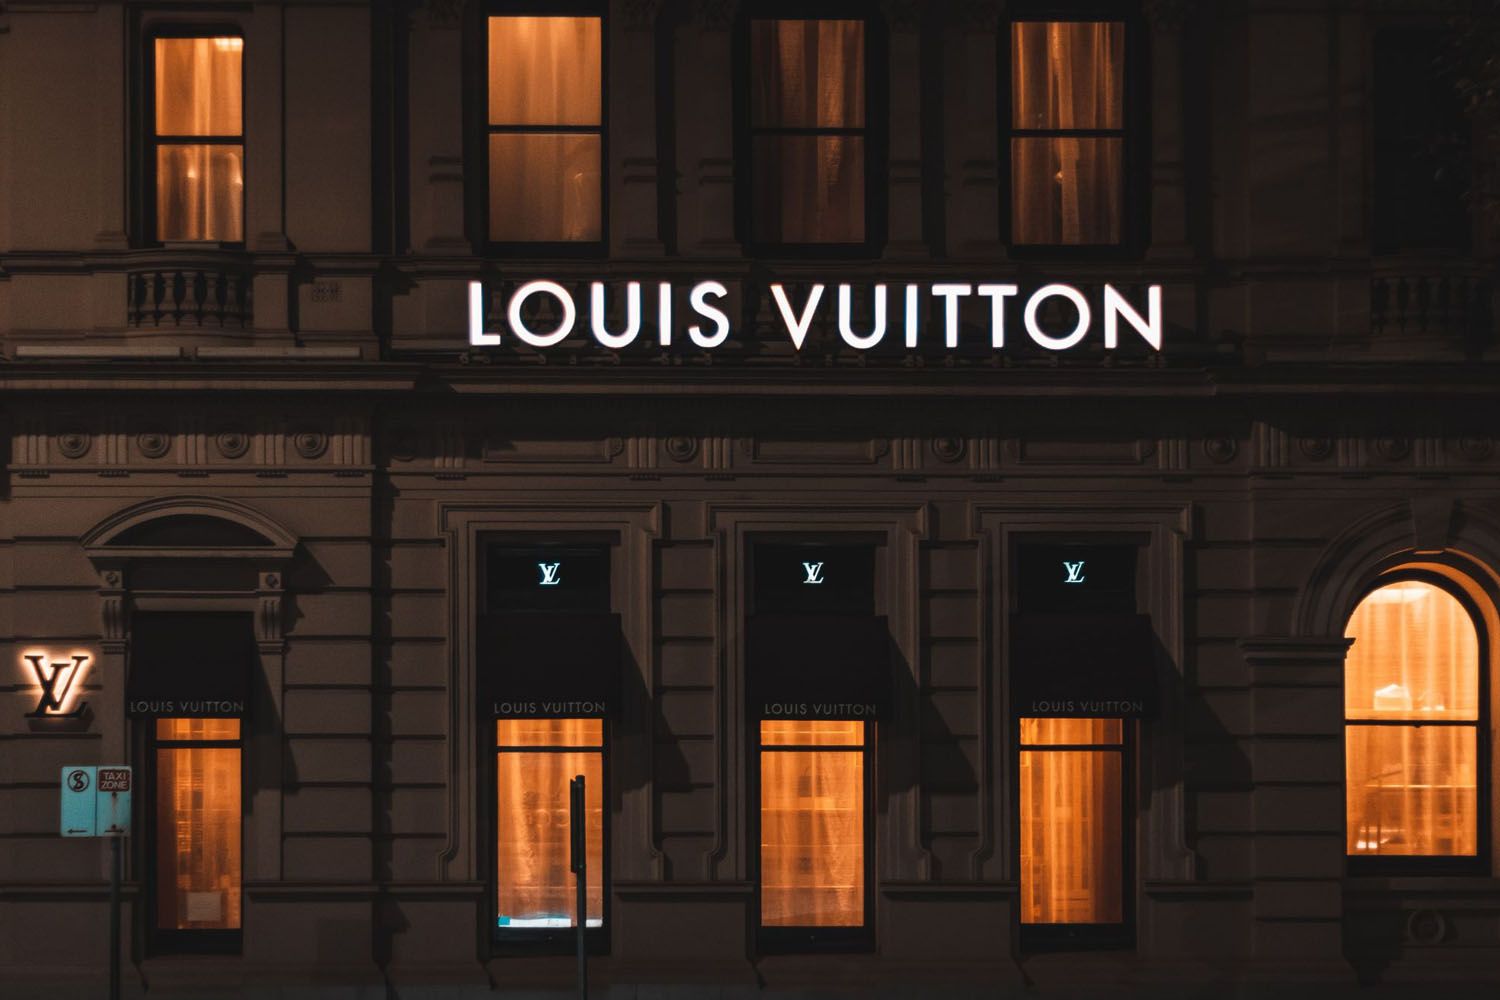 Clase alta: Así se pronuncia el nombre de la marca Louis Vuitton